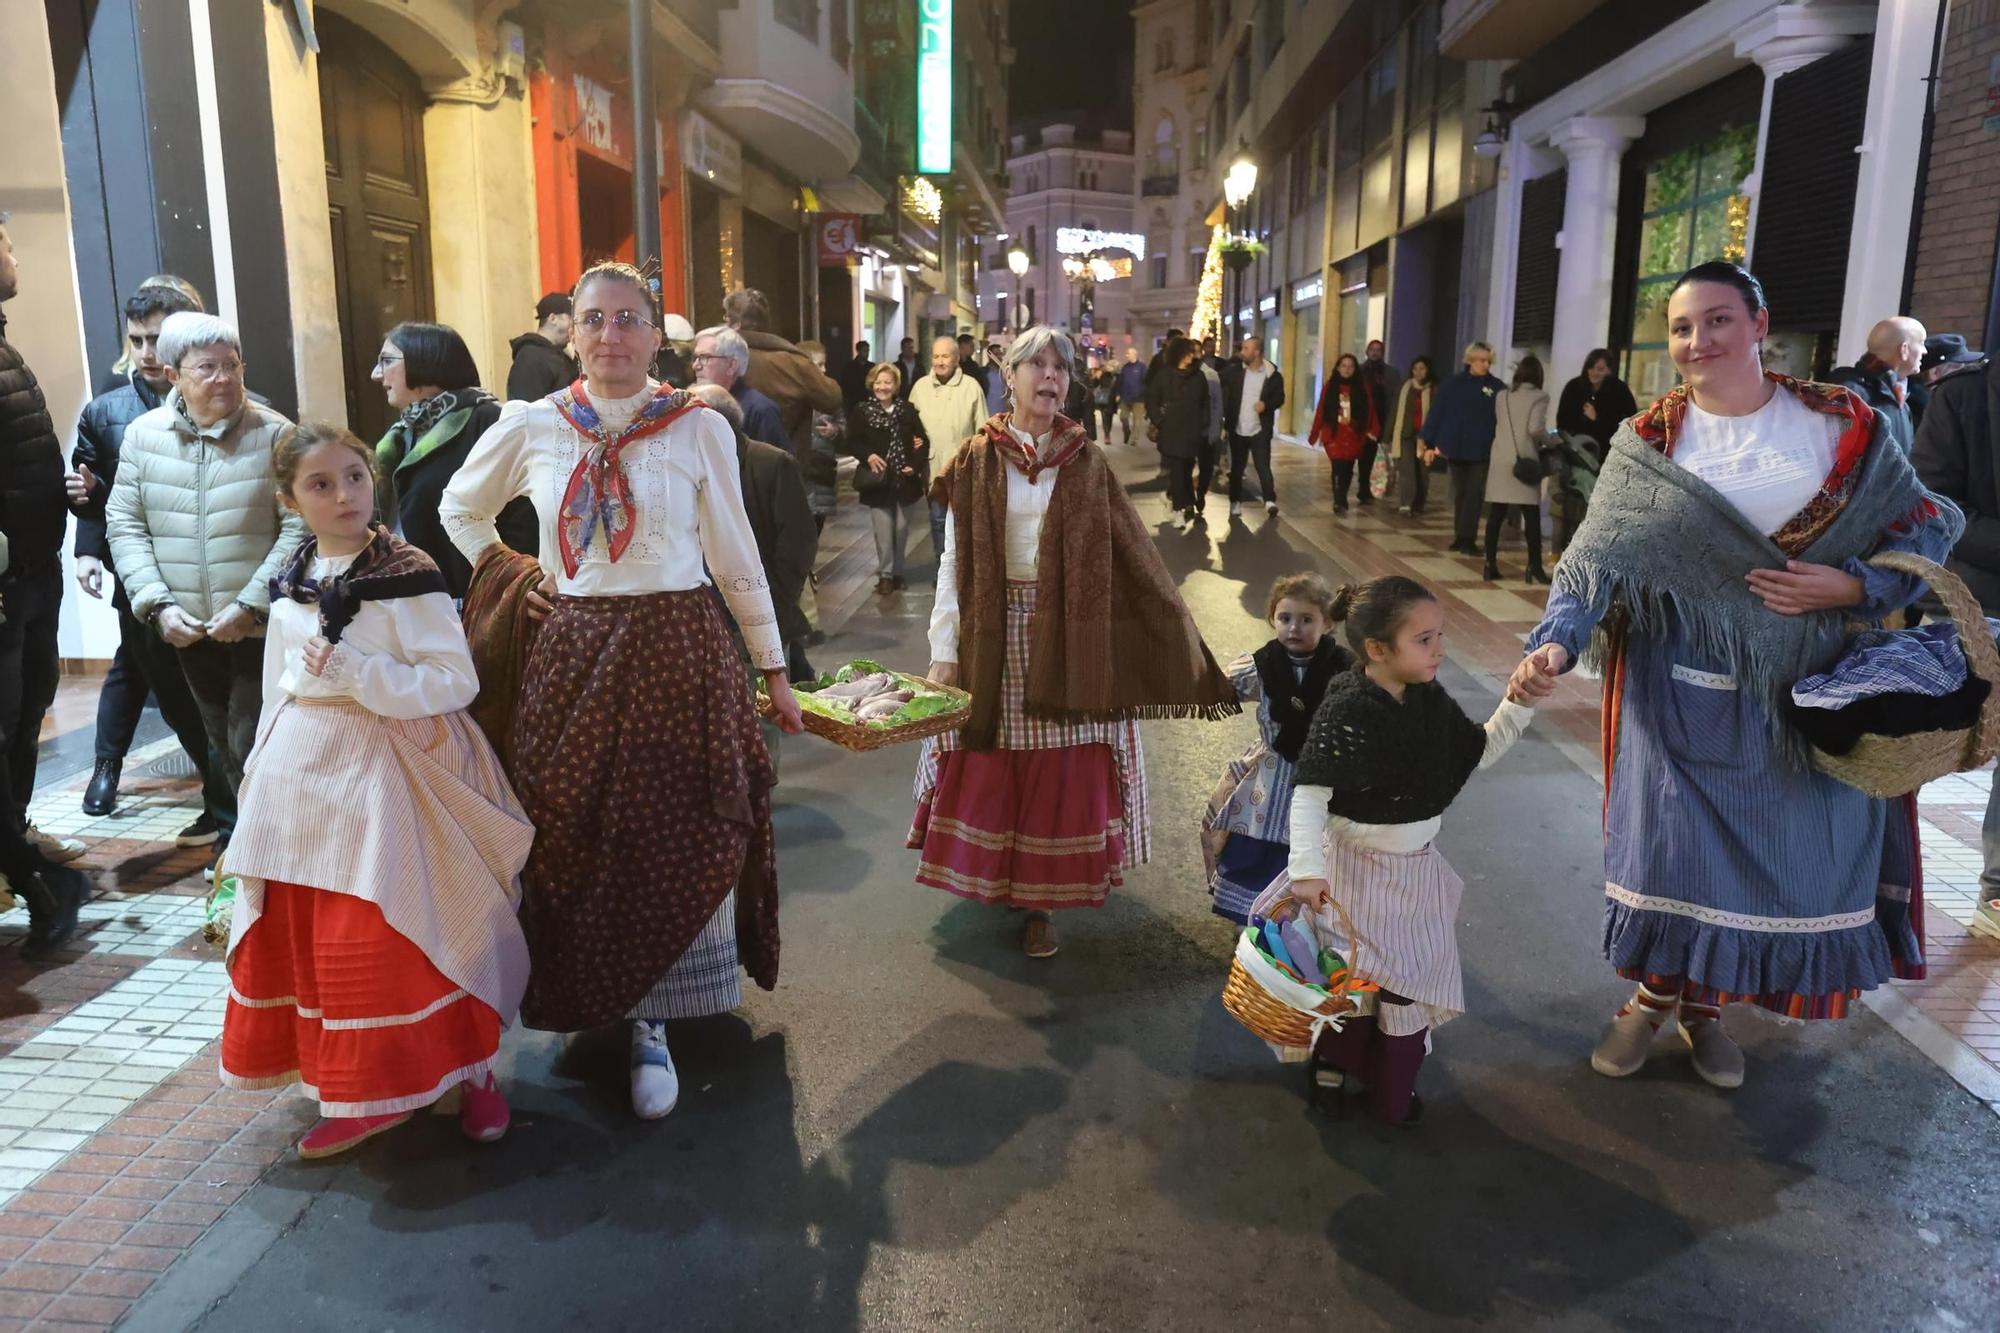 Galería de fotos: Betlem de la Pigà en Castelló, la representación pairal de la Navidad